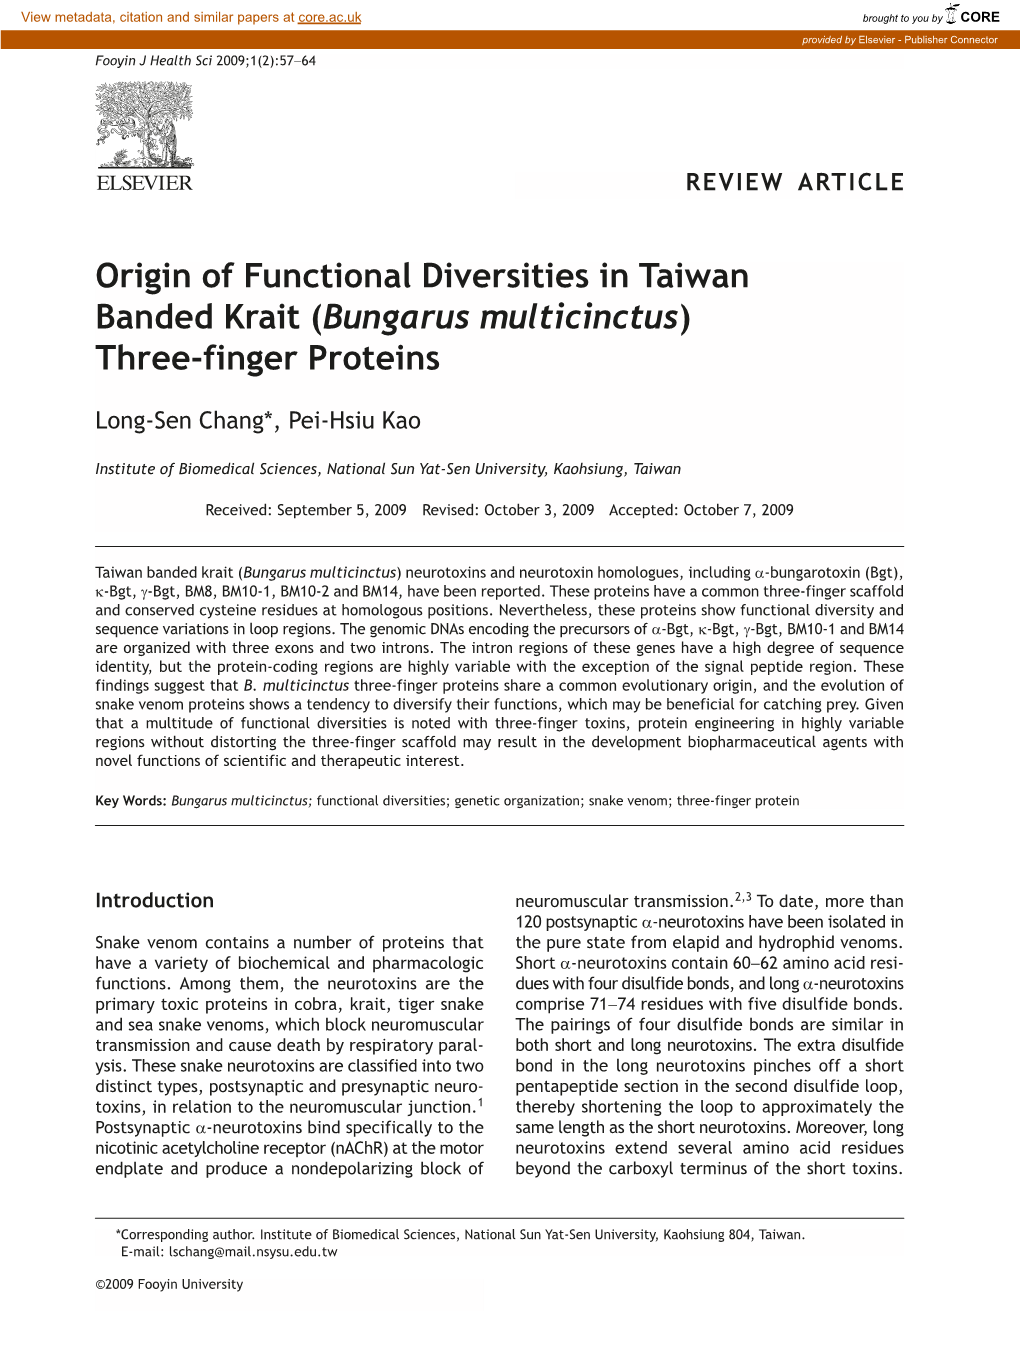 Bungarus Multicinctus) Three-Finger Proteins